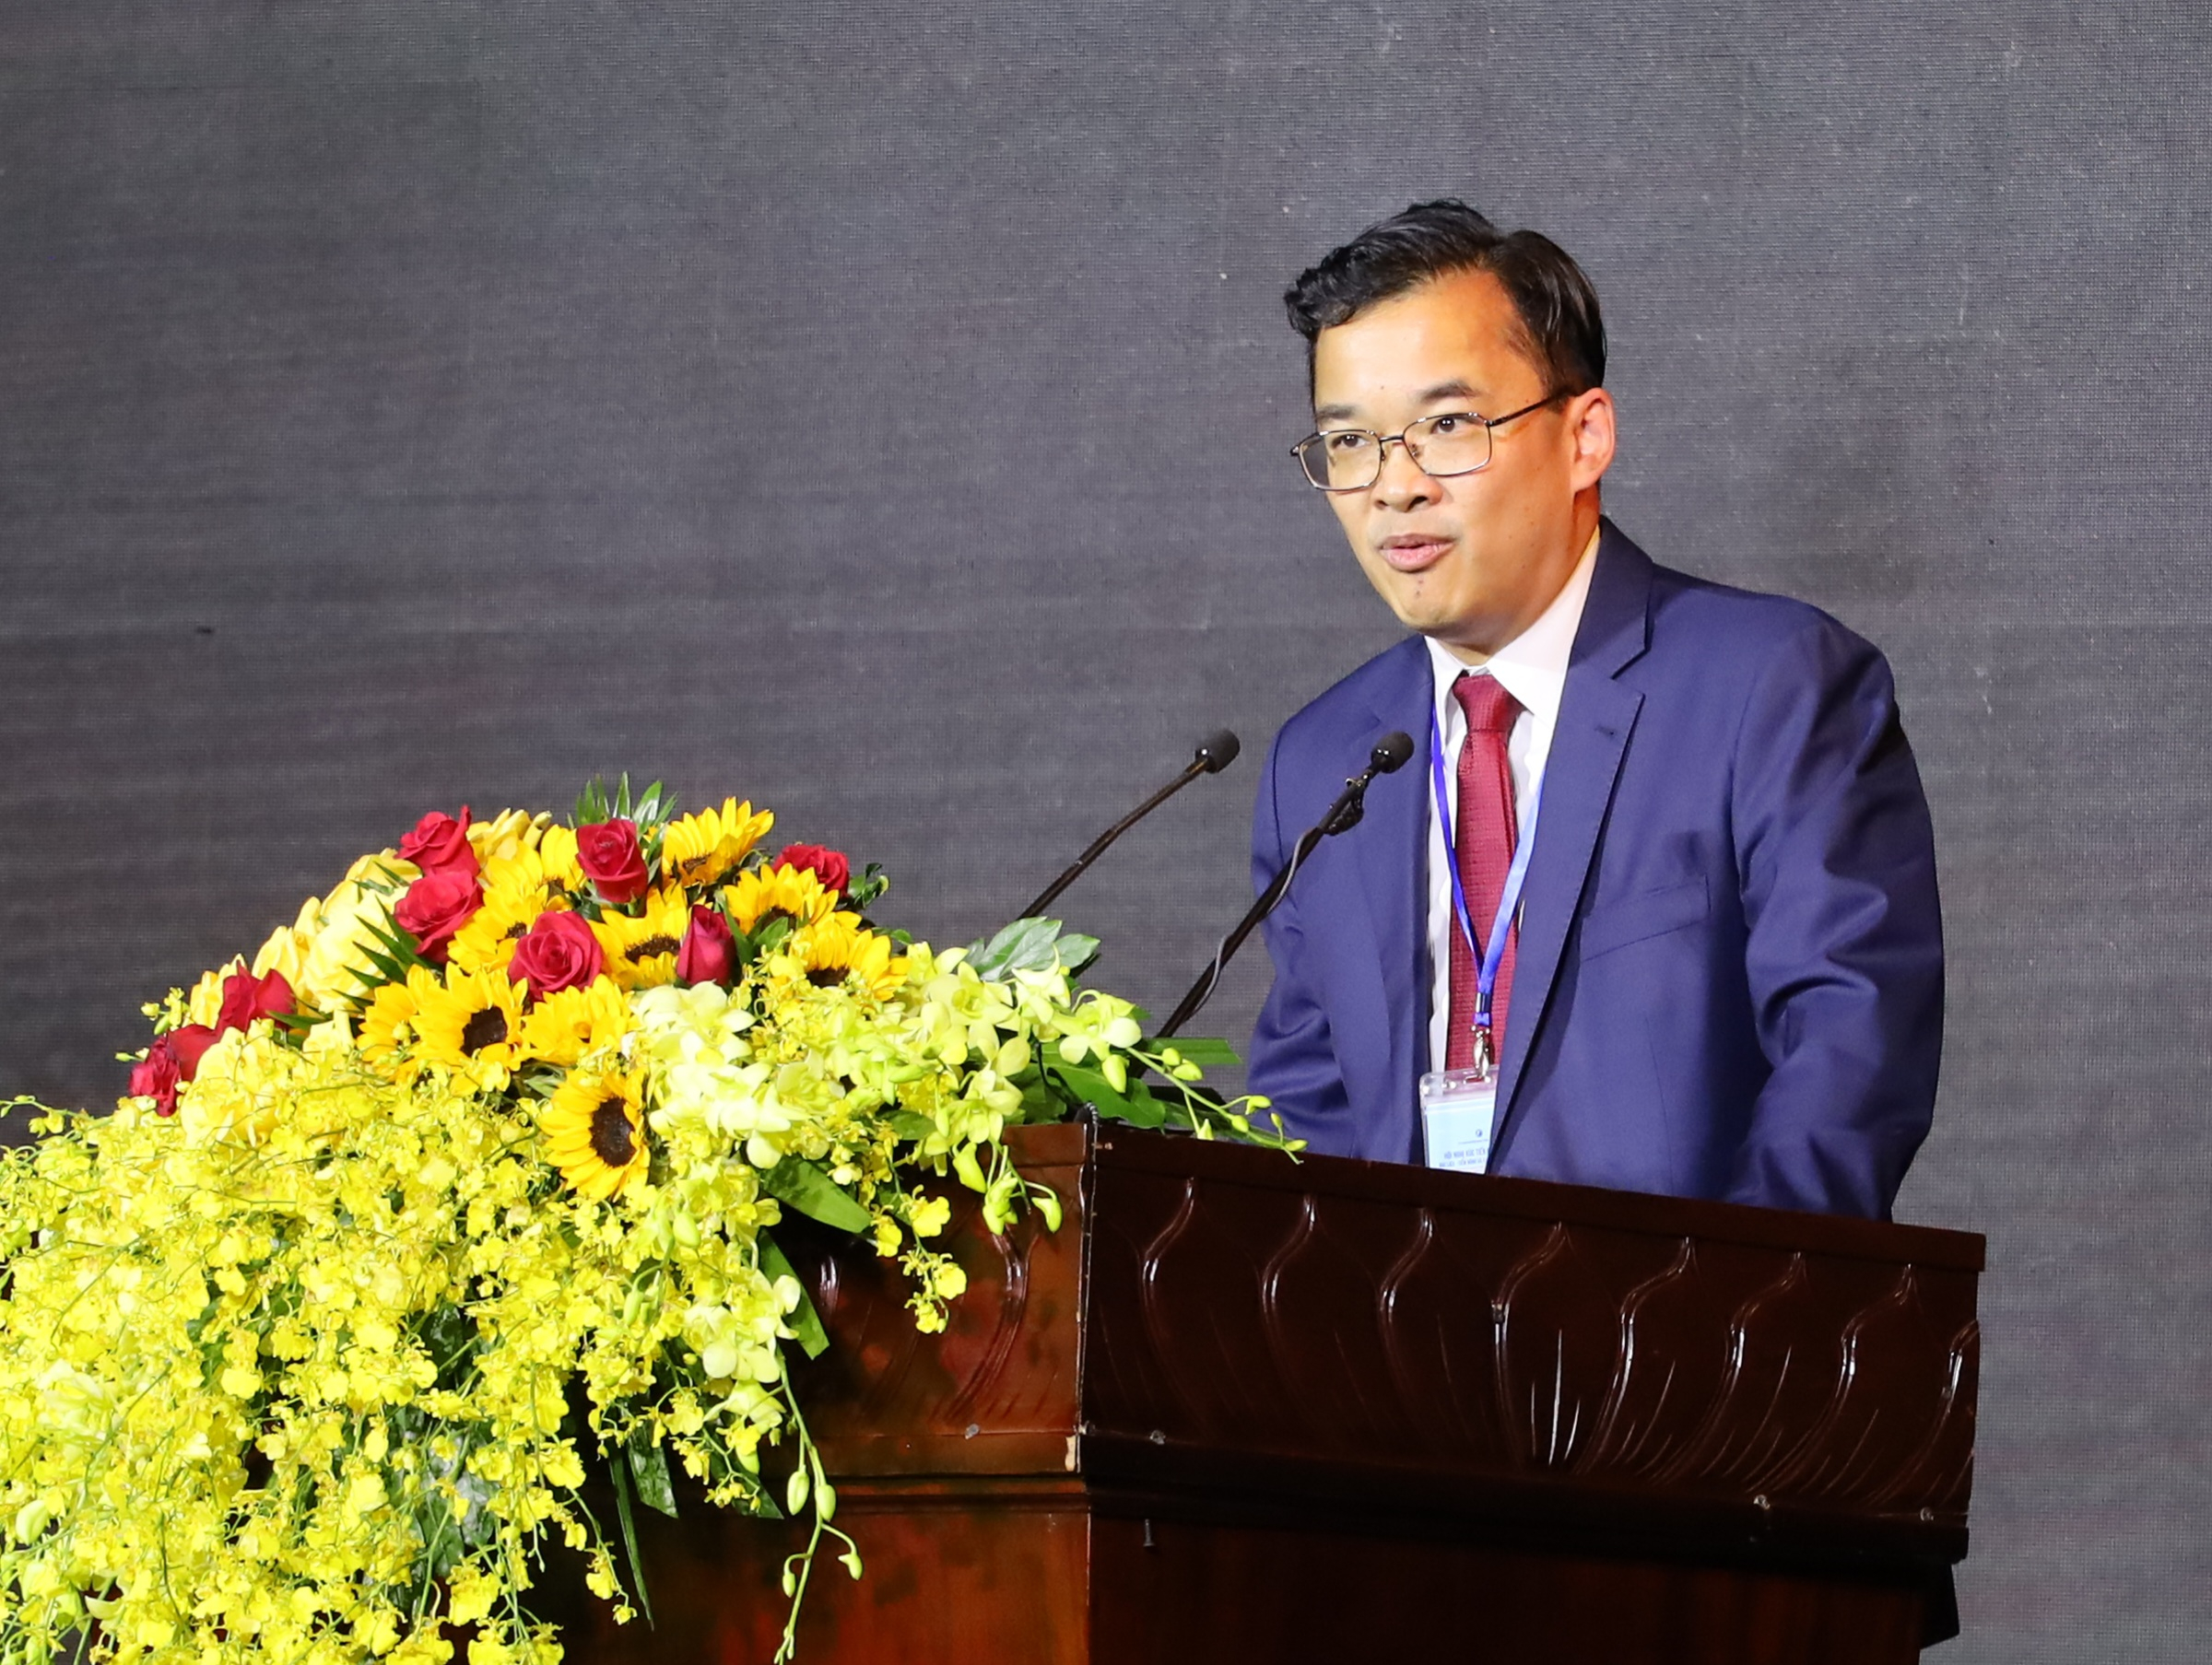 Ông Jormsup Lochaya - Chủ tịch Tập đoàn Super Energy Thái Lan trình bày tham luận tại hội nghị.